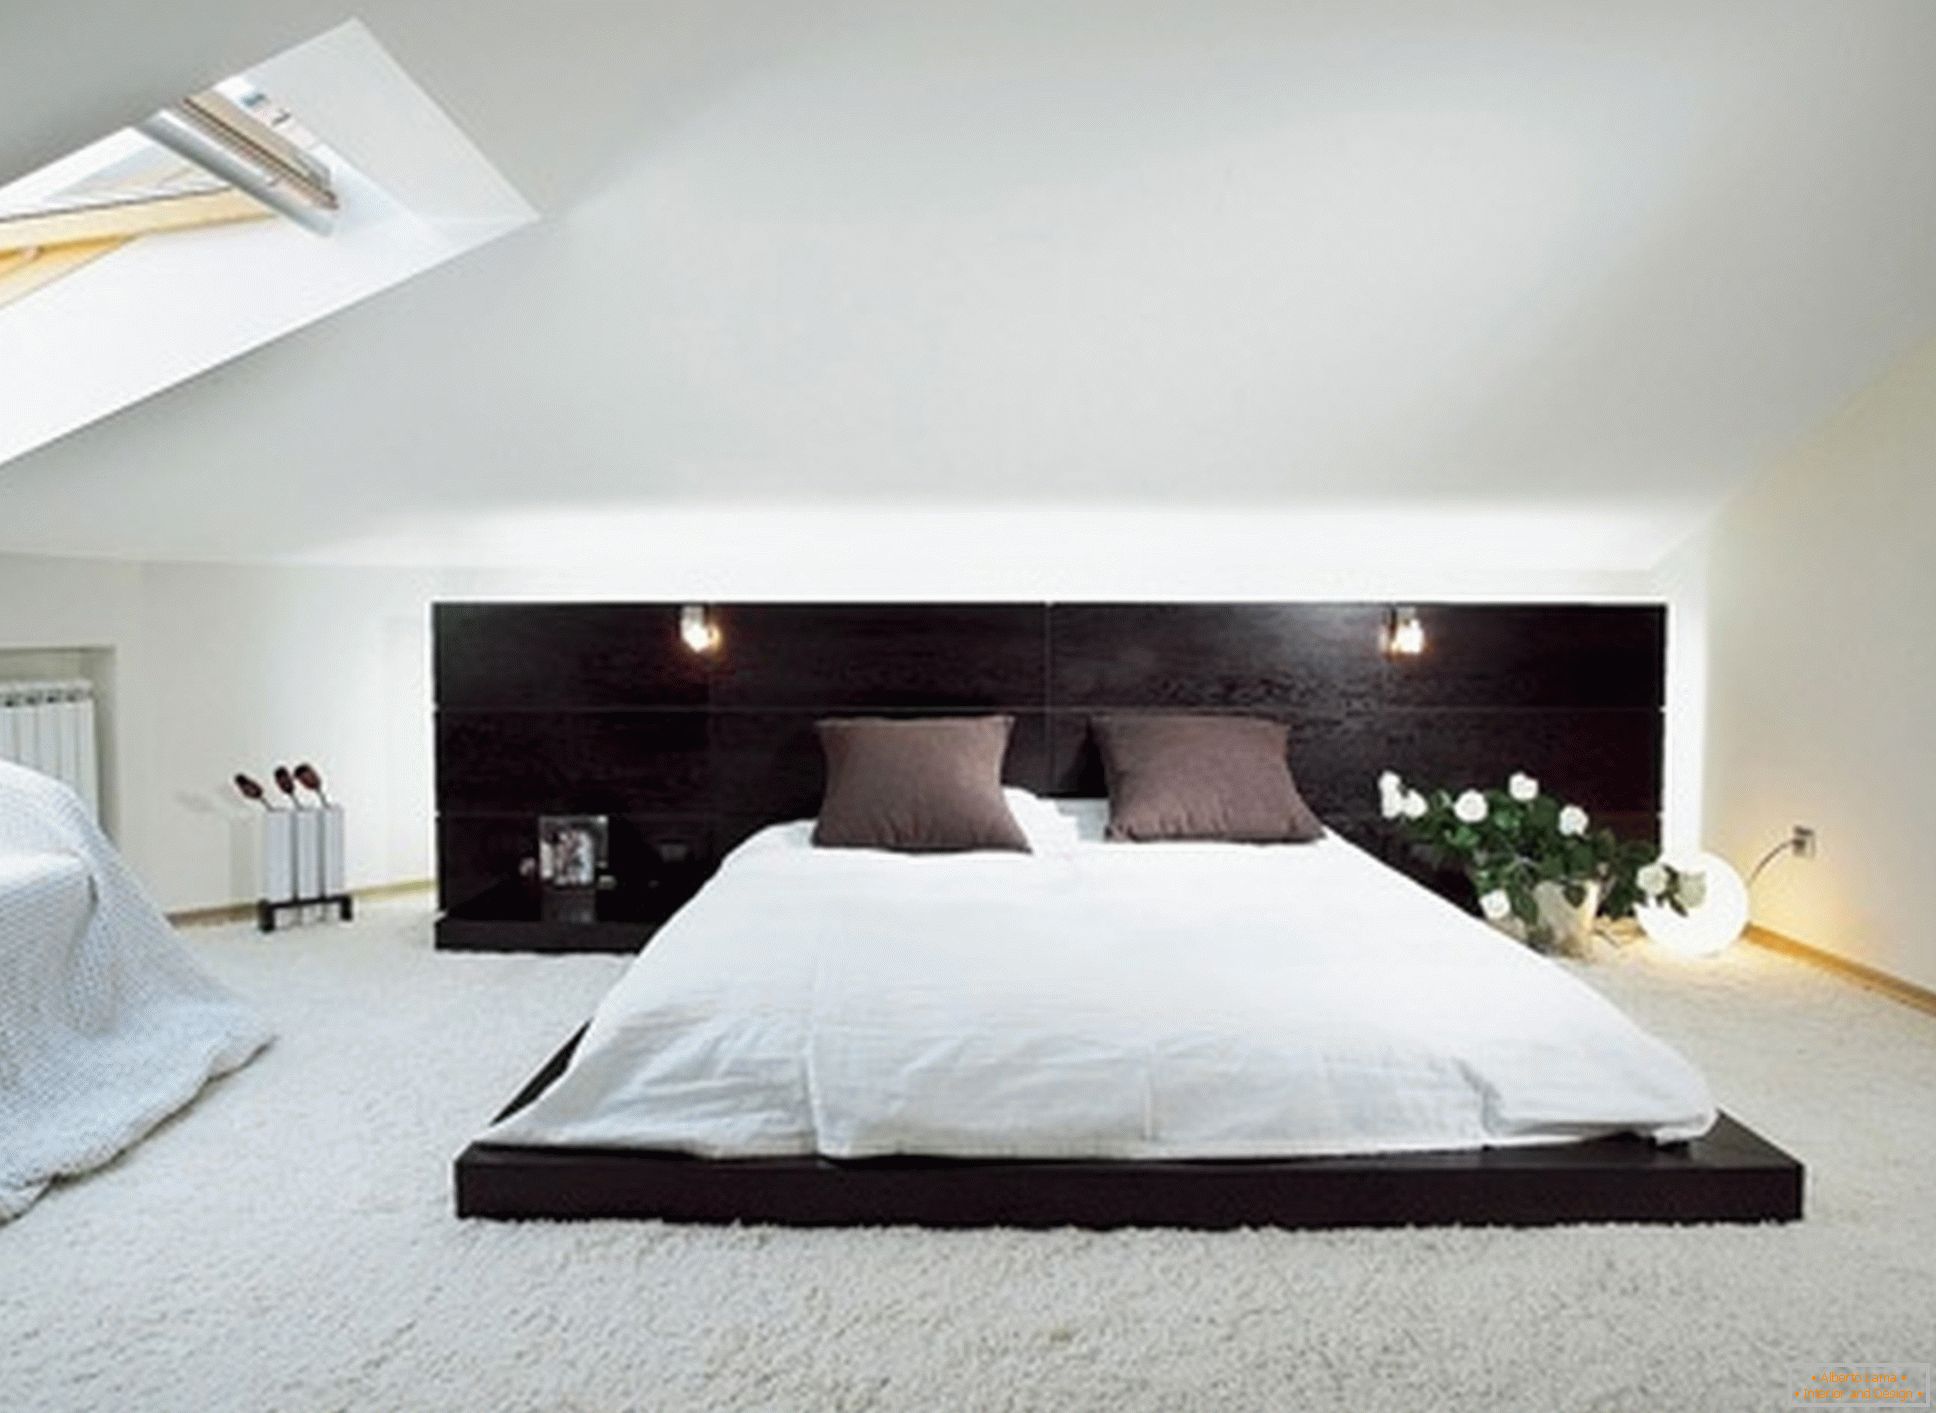 Dormitor luxos în stilul minimalismului - un exemplu de design reușit al unei încăperi mici pe podea.